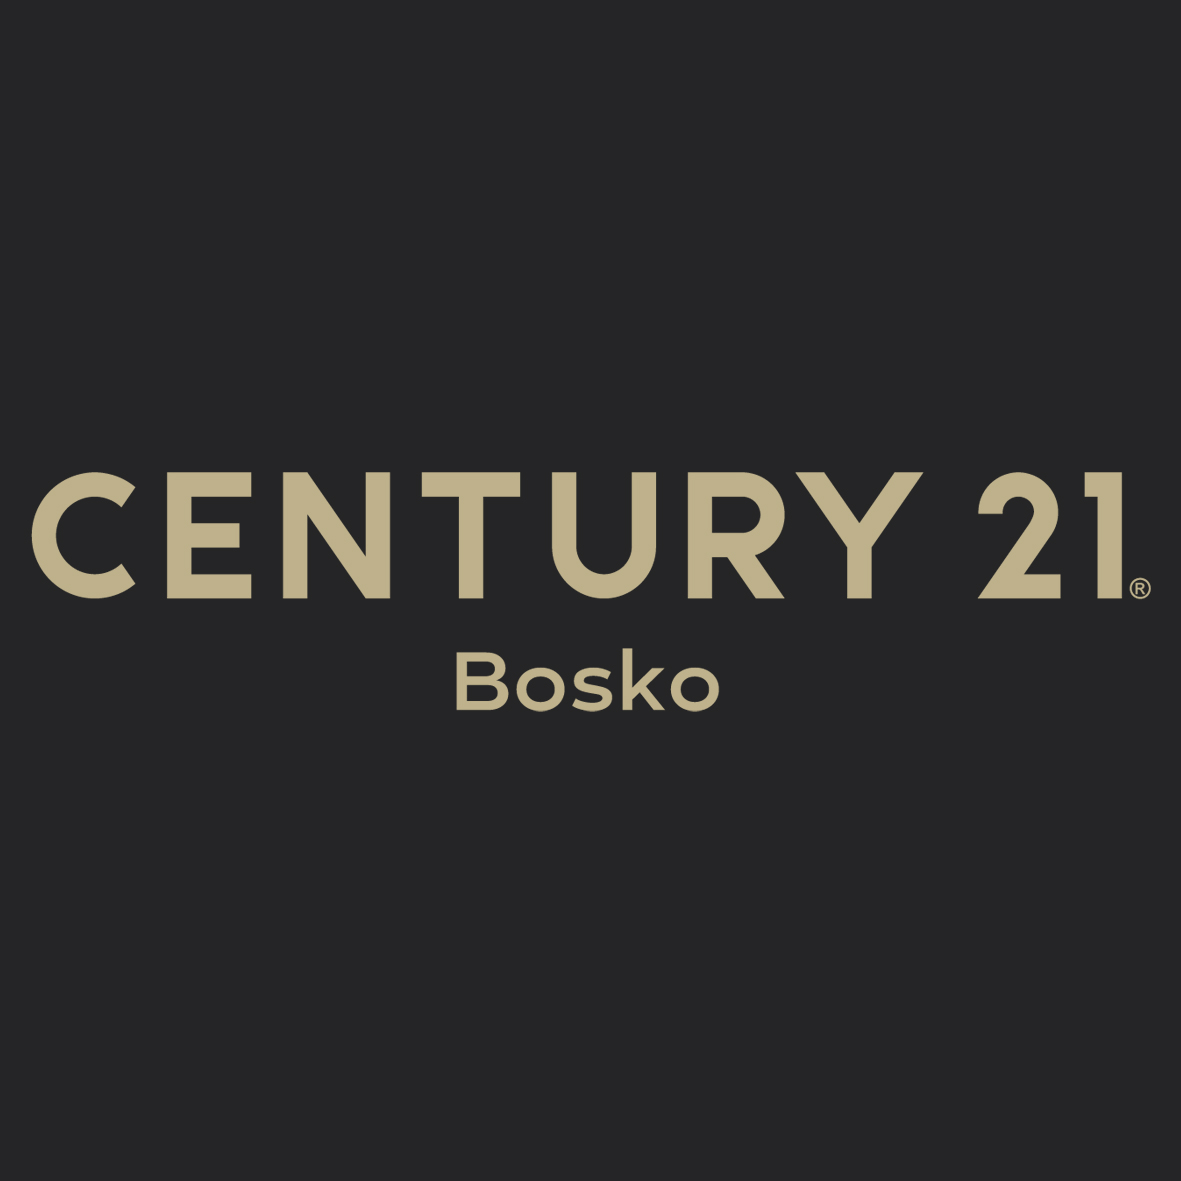 CENTURY 21 Bosko